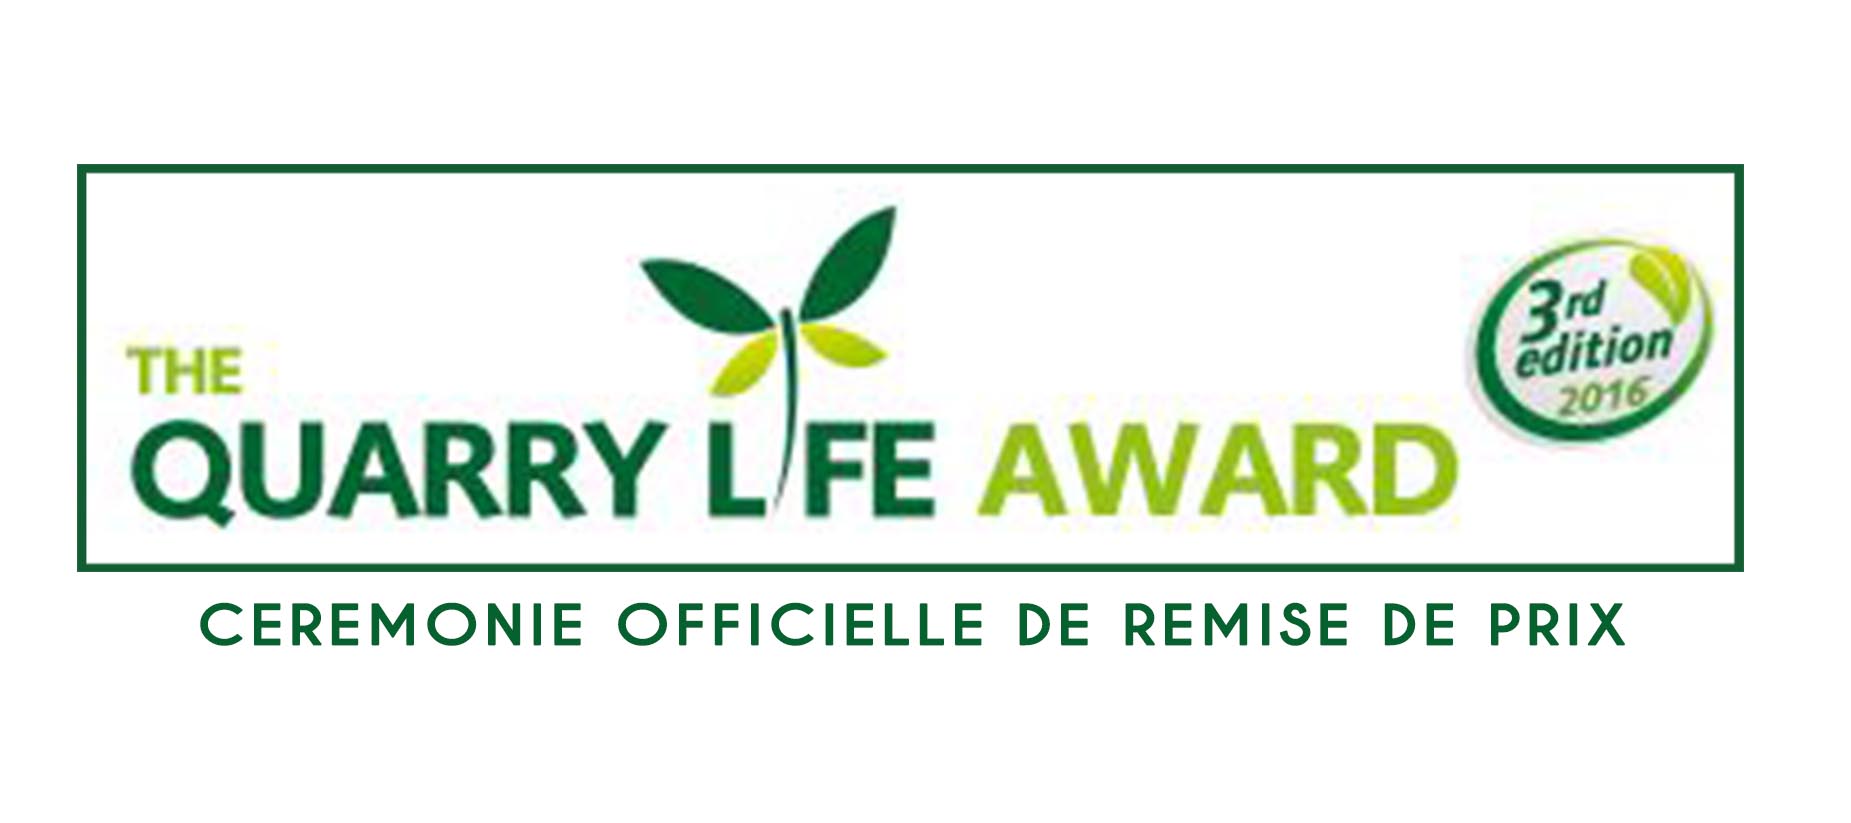 QUARRY LIFE AWARD 2016: Cérémonie Officielle de remise de prix